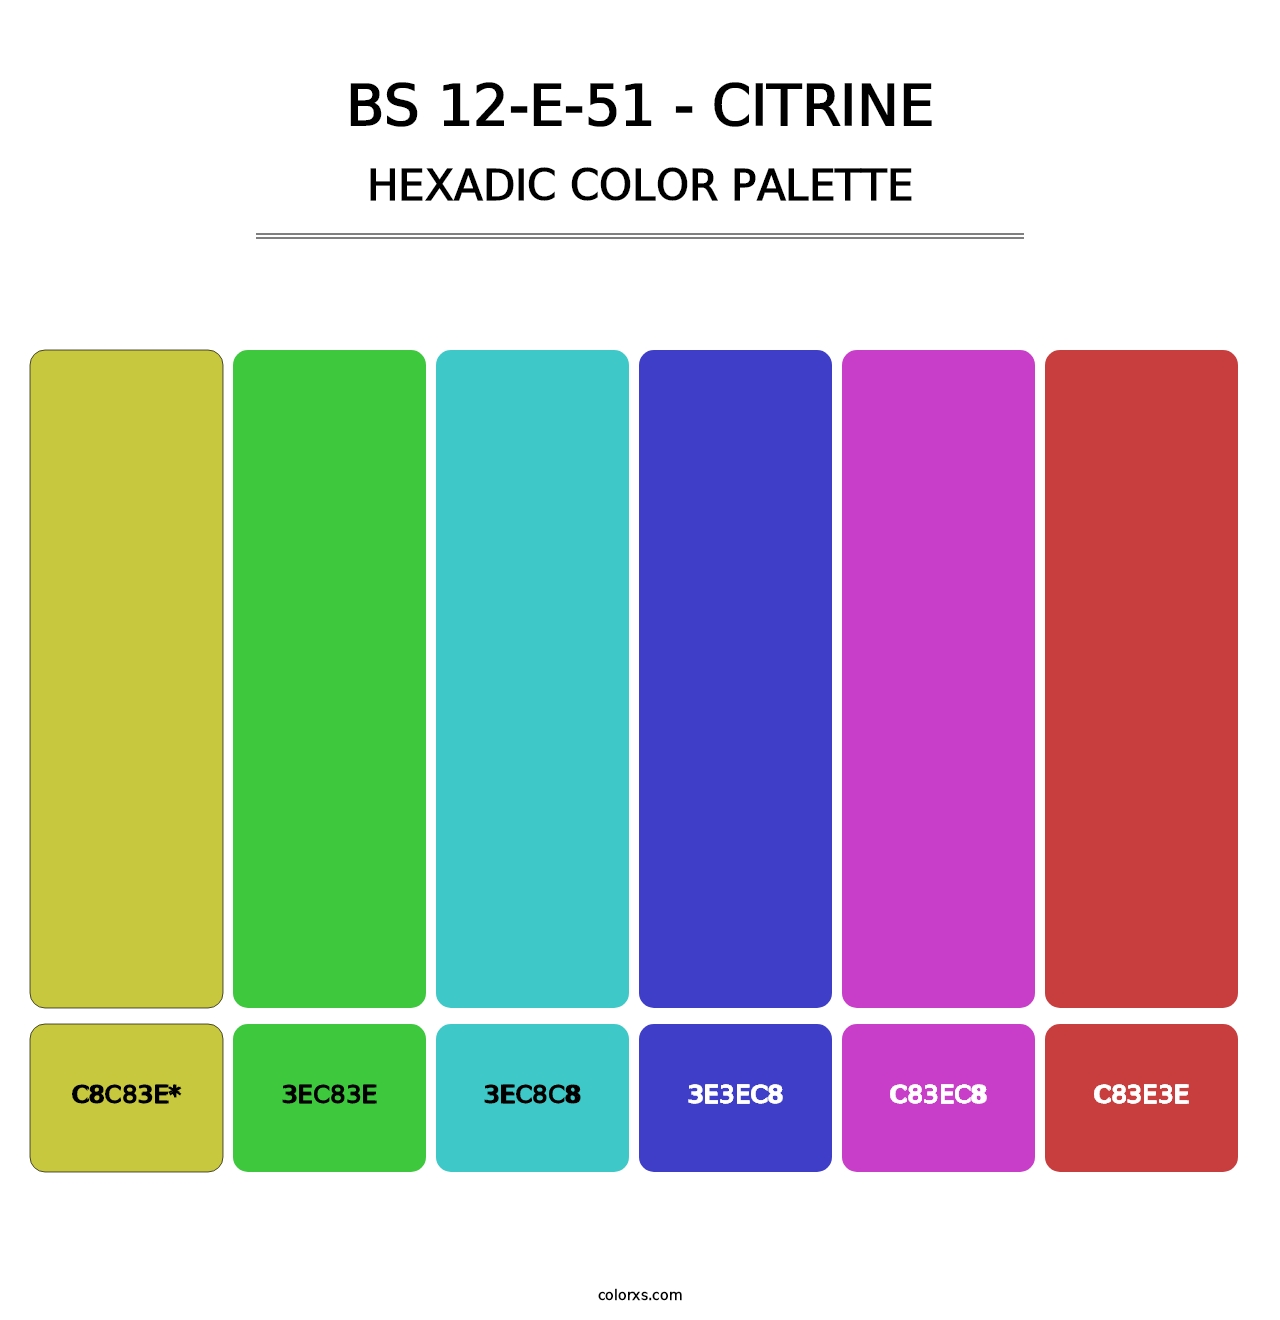 BS 12-E-51 - Citrine - Hexadic Color Palette